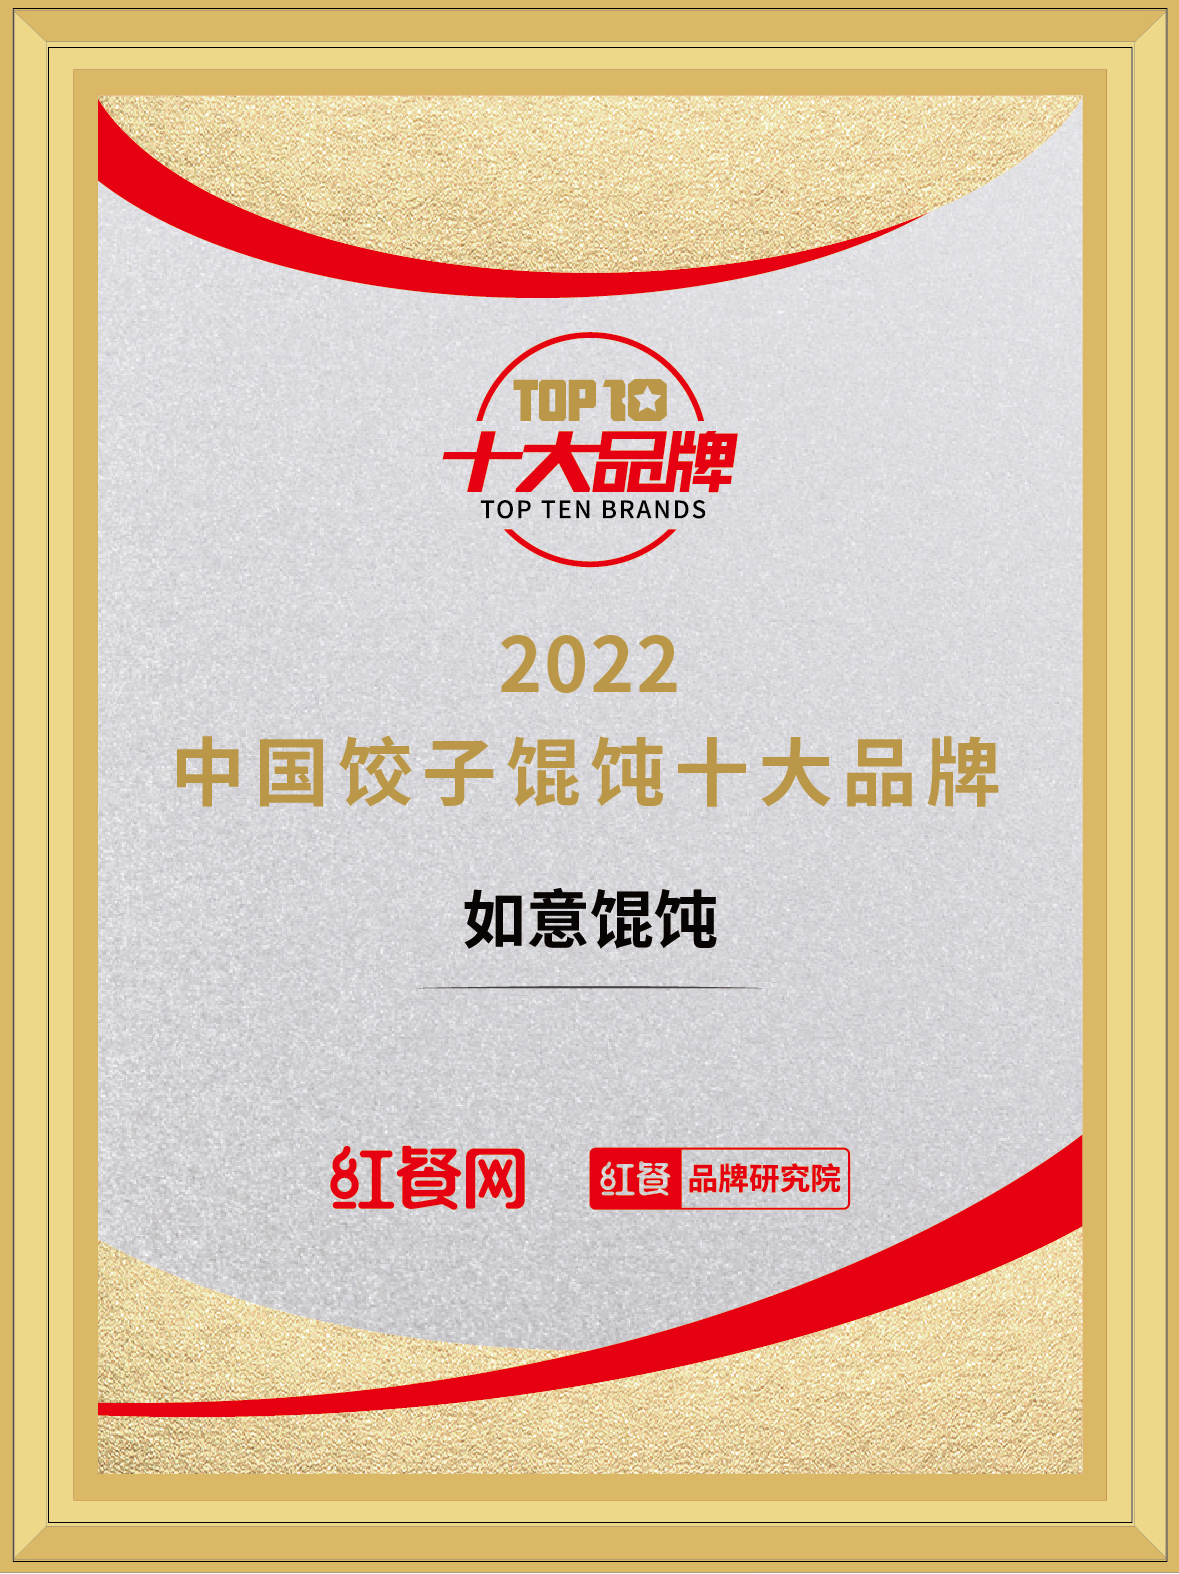 恭喜如意馄饨荣获“2022年中国饺子馄饨十大品牌”